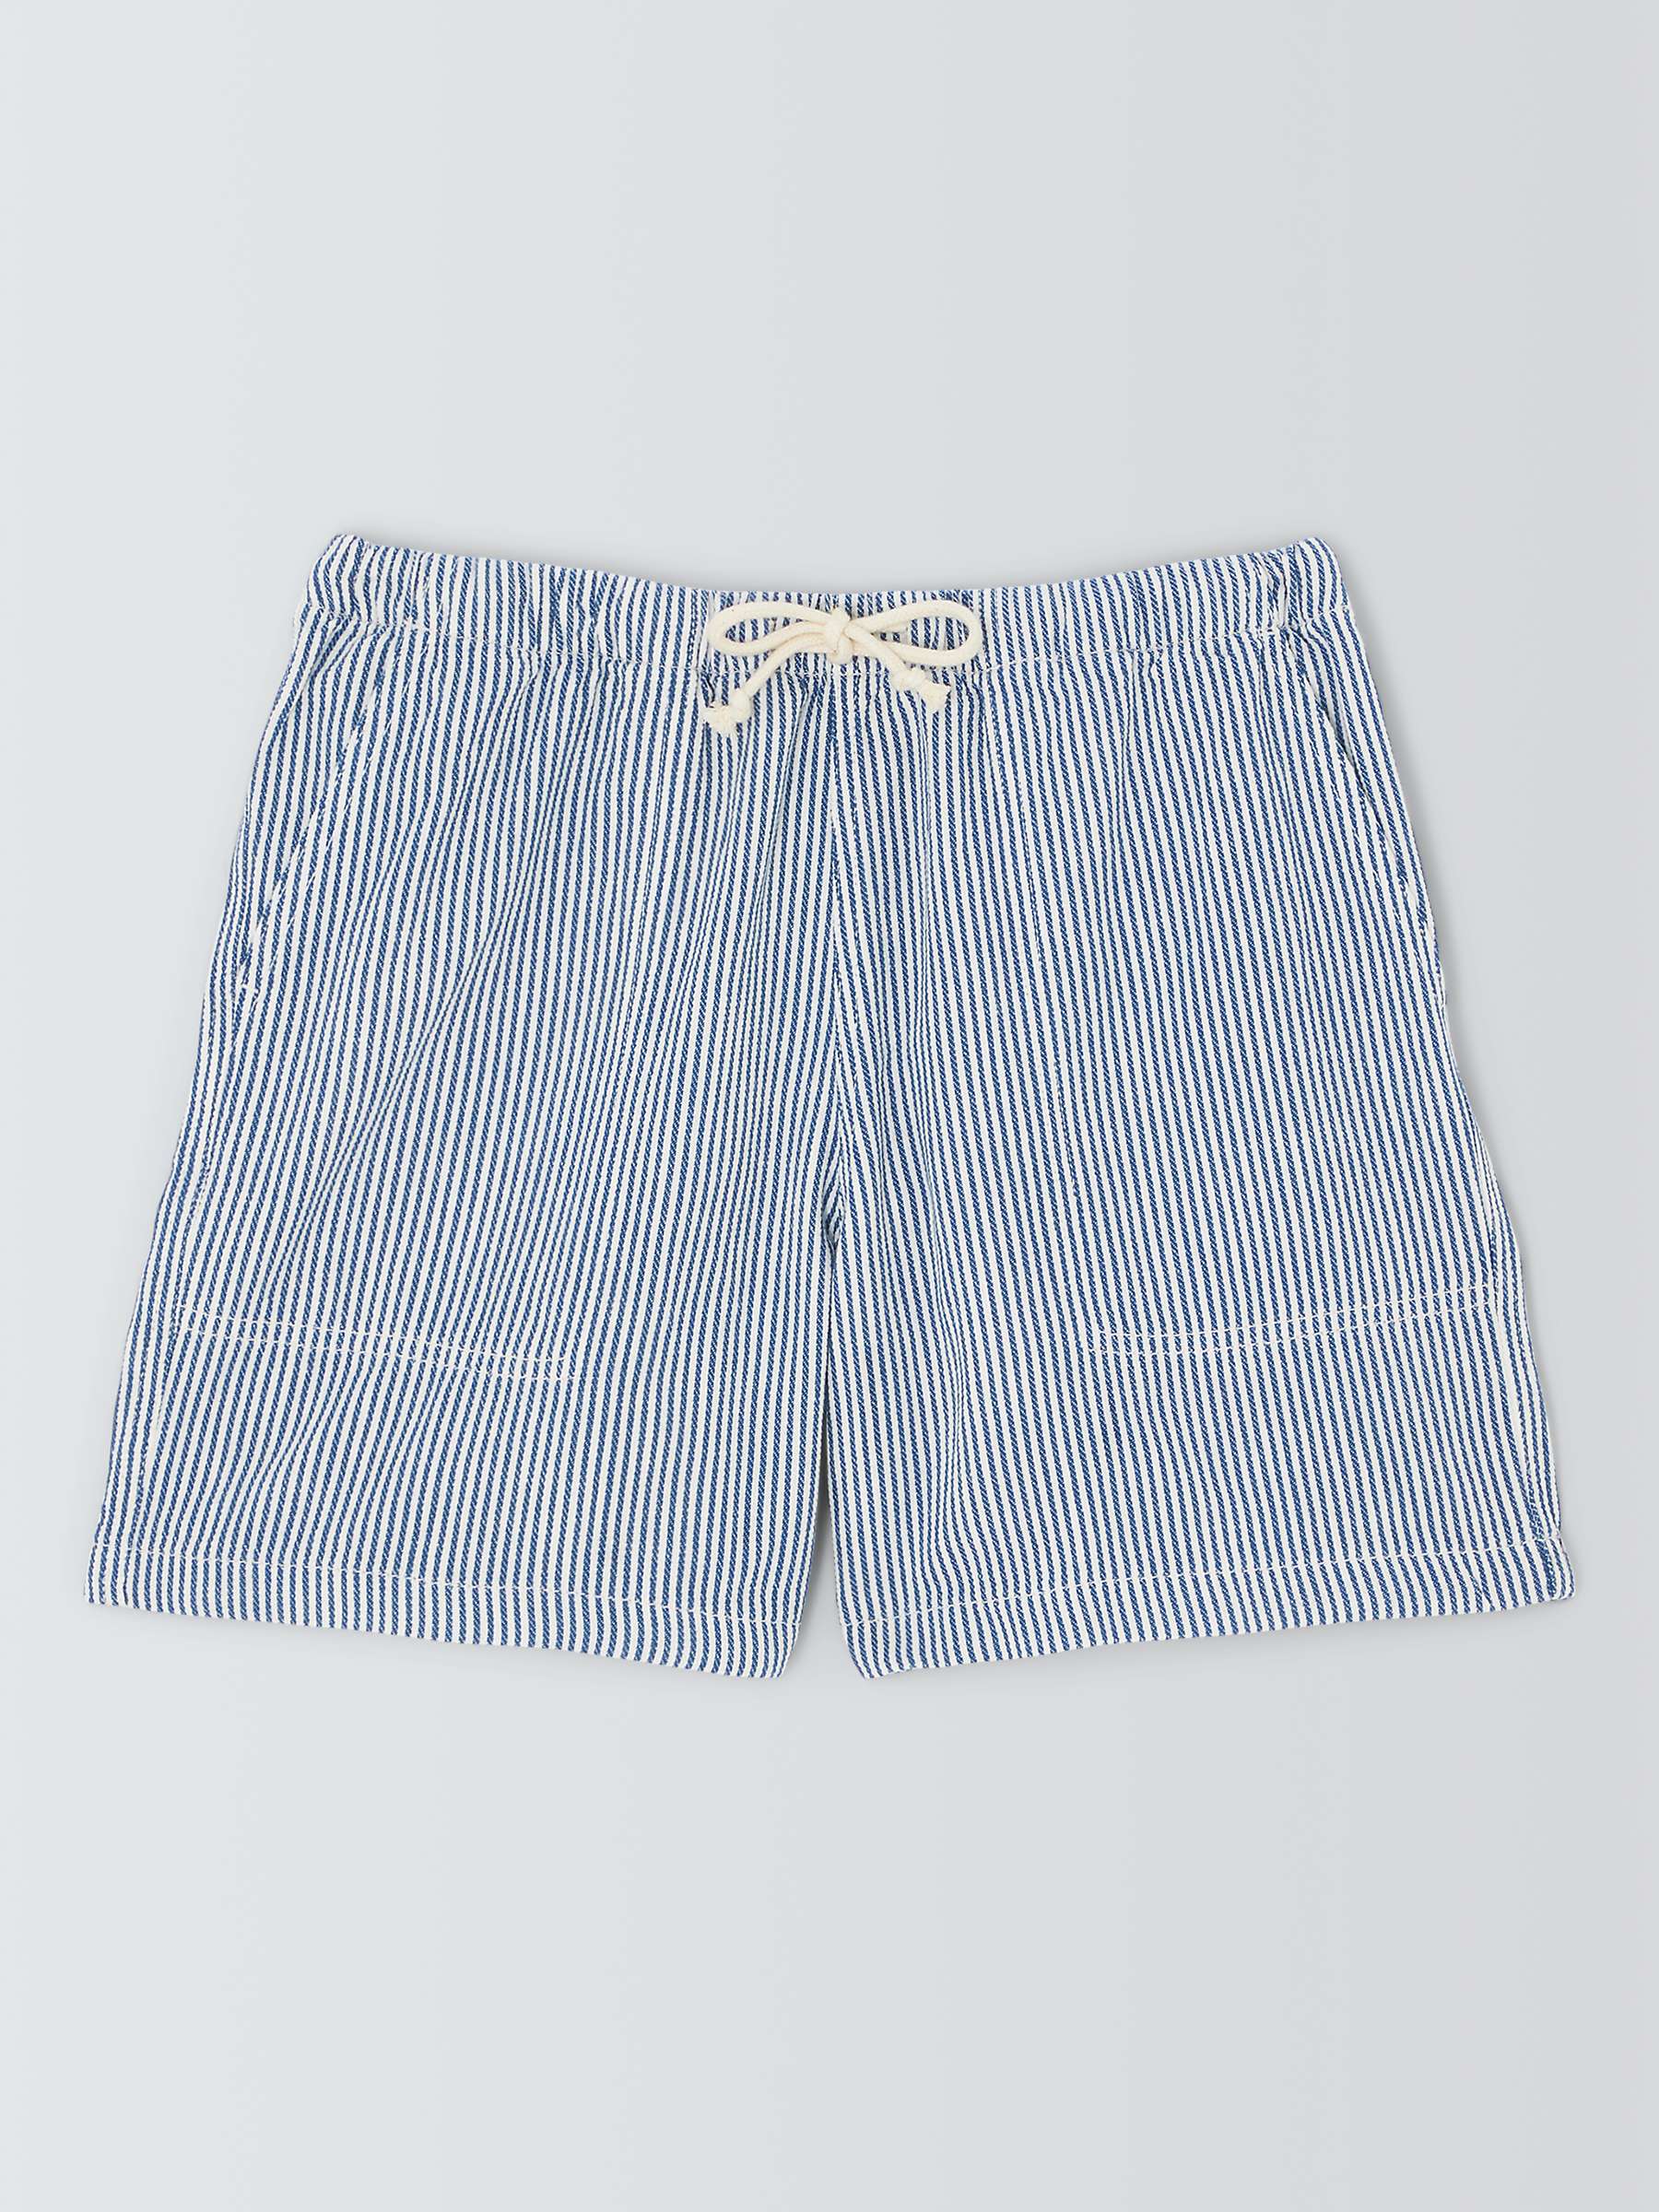 Buy La Paz Stripe Cotton Beach Shorts, Blue Online at johnlewis.com